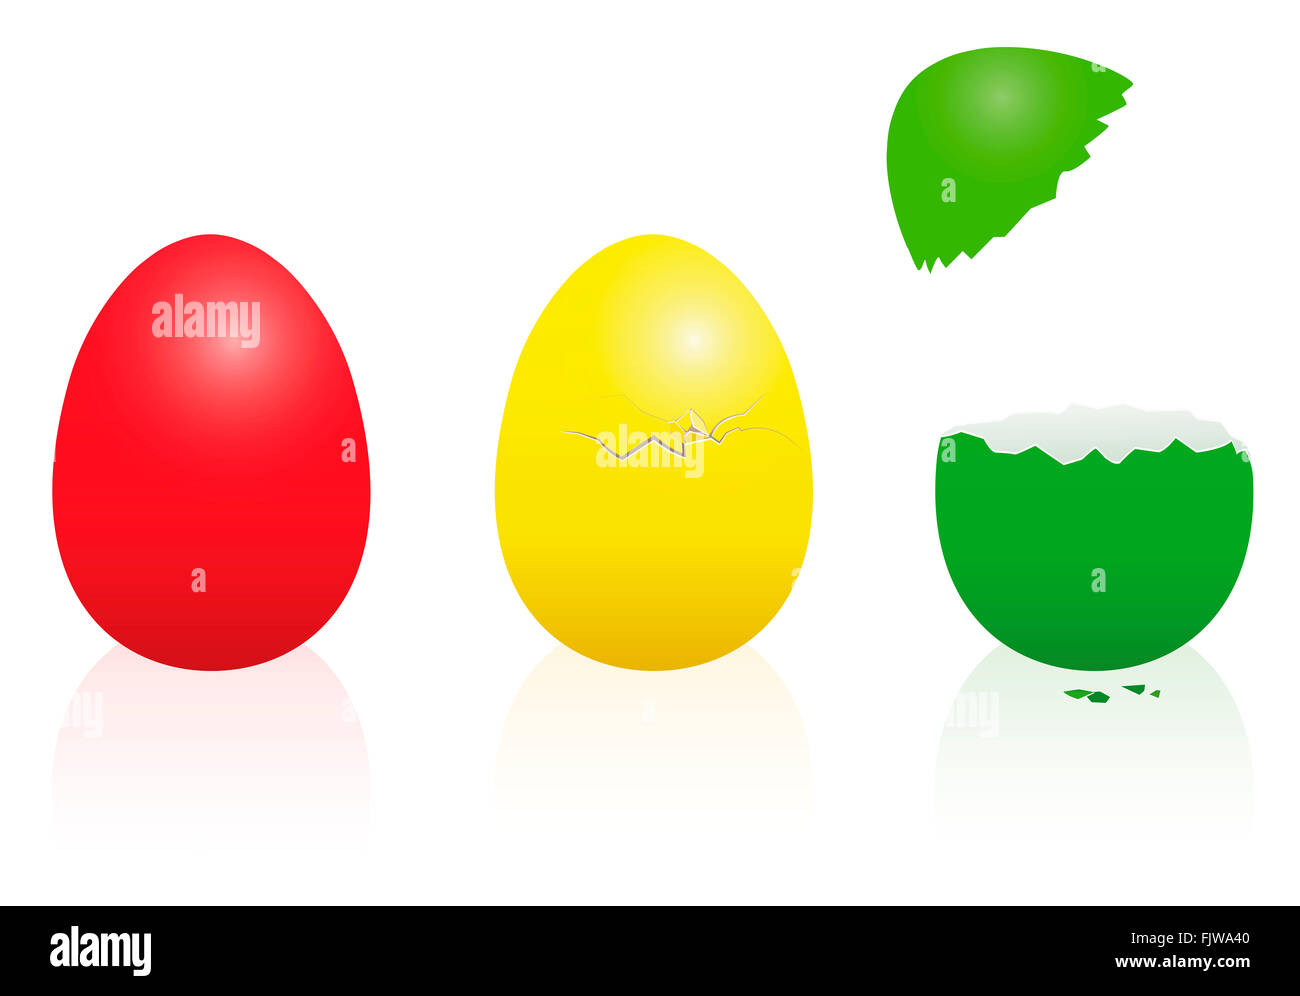 Los huevos de Pascua - semáforo de colores: rojo, amarillo, verde- intacto, roto, abierto. Ilustración tridimensional. Foto de stock